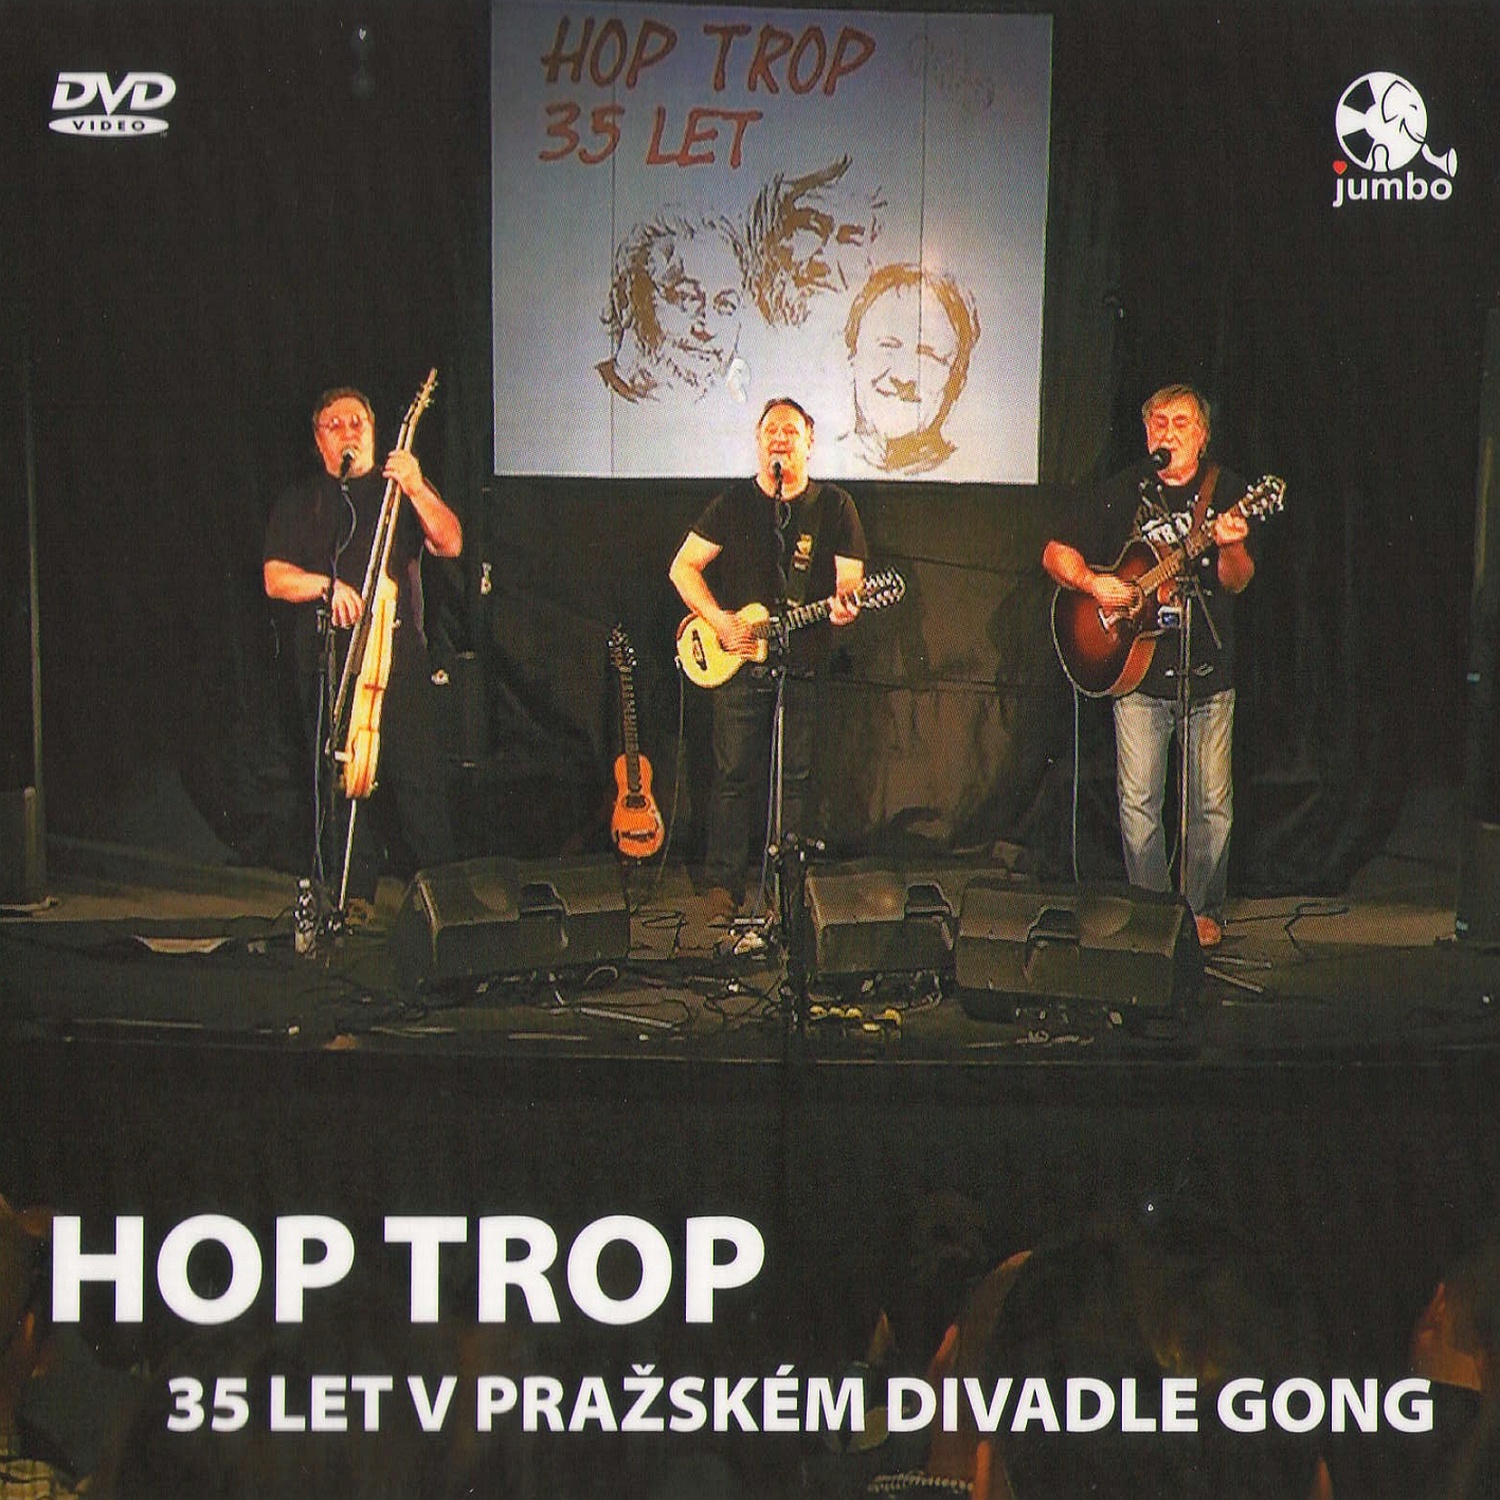 CD Shop - HOP TROP 35 LET V PRAZSKEM DIVADLE GONG